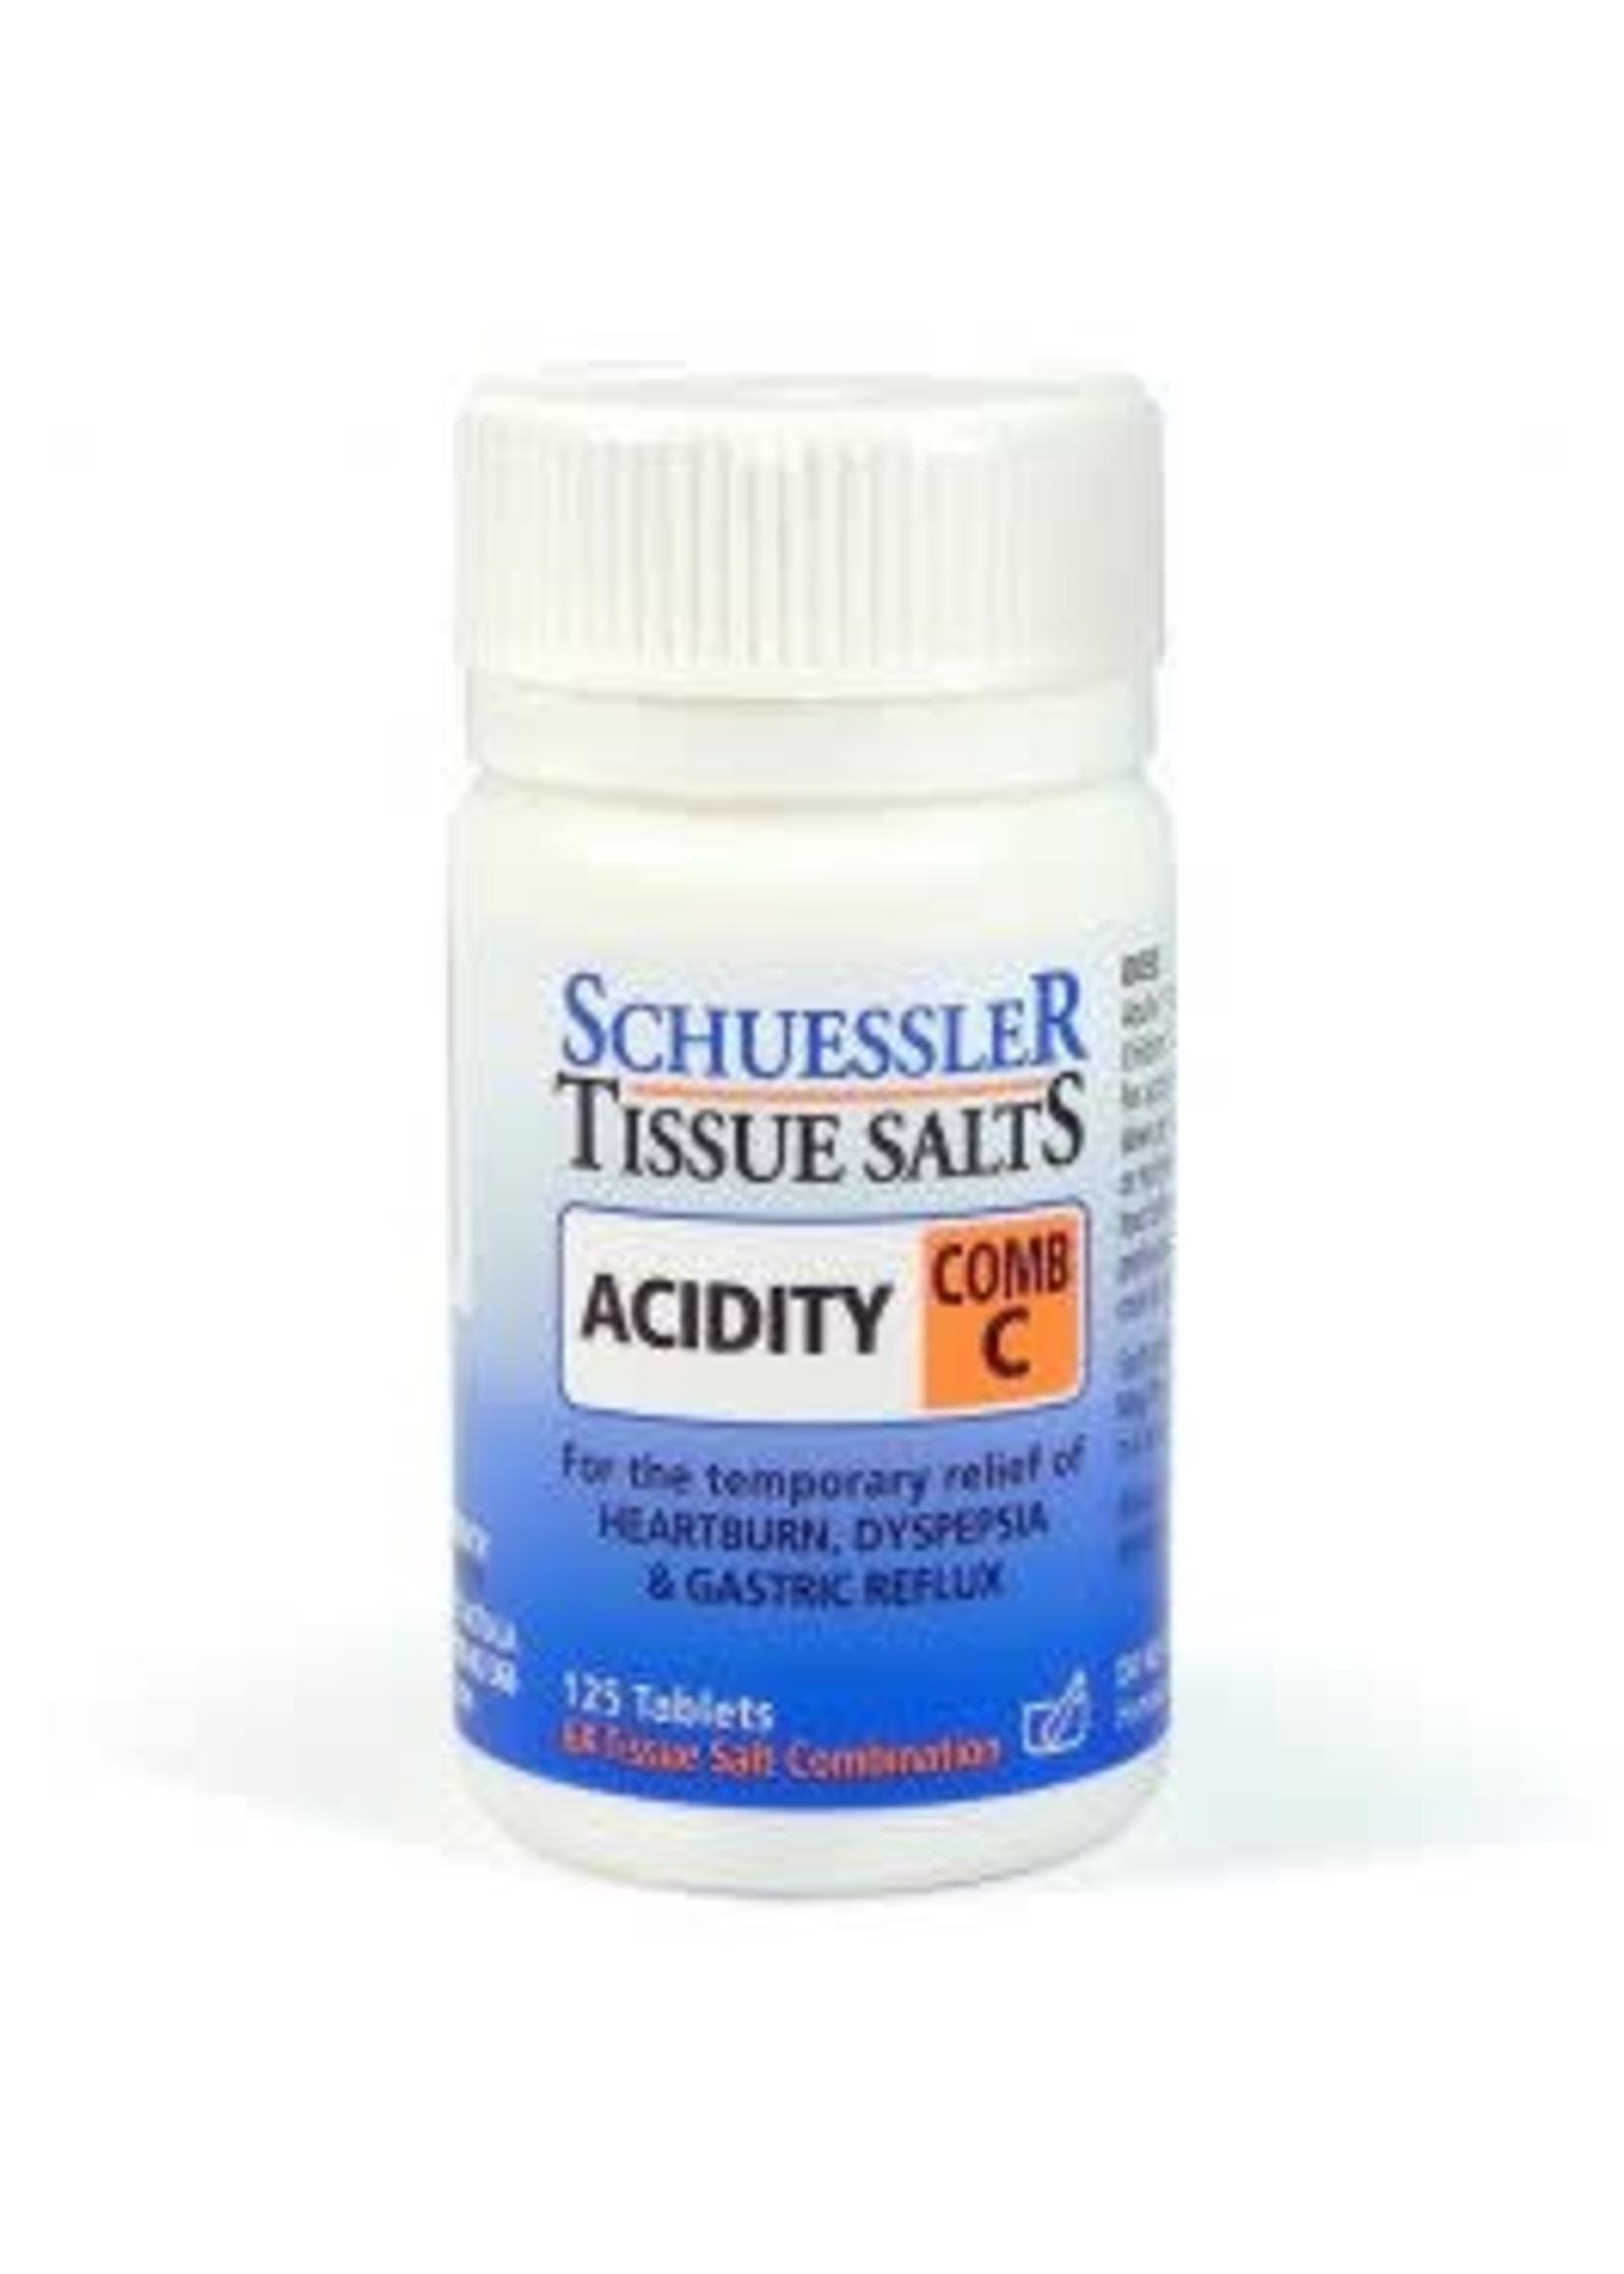 Martin & Pleasance Martin & Pleasance Scheussler Tissue Salts ACIDITY Comb C 125 tabs